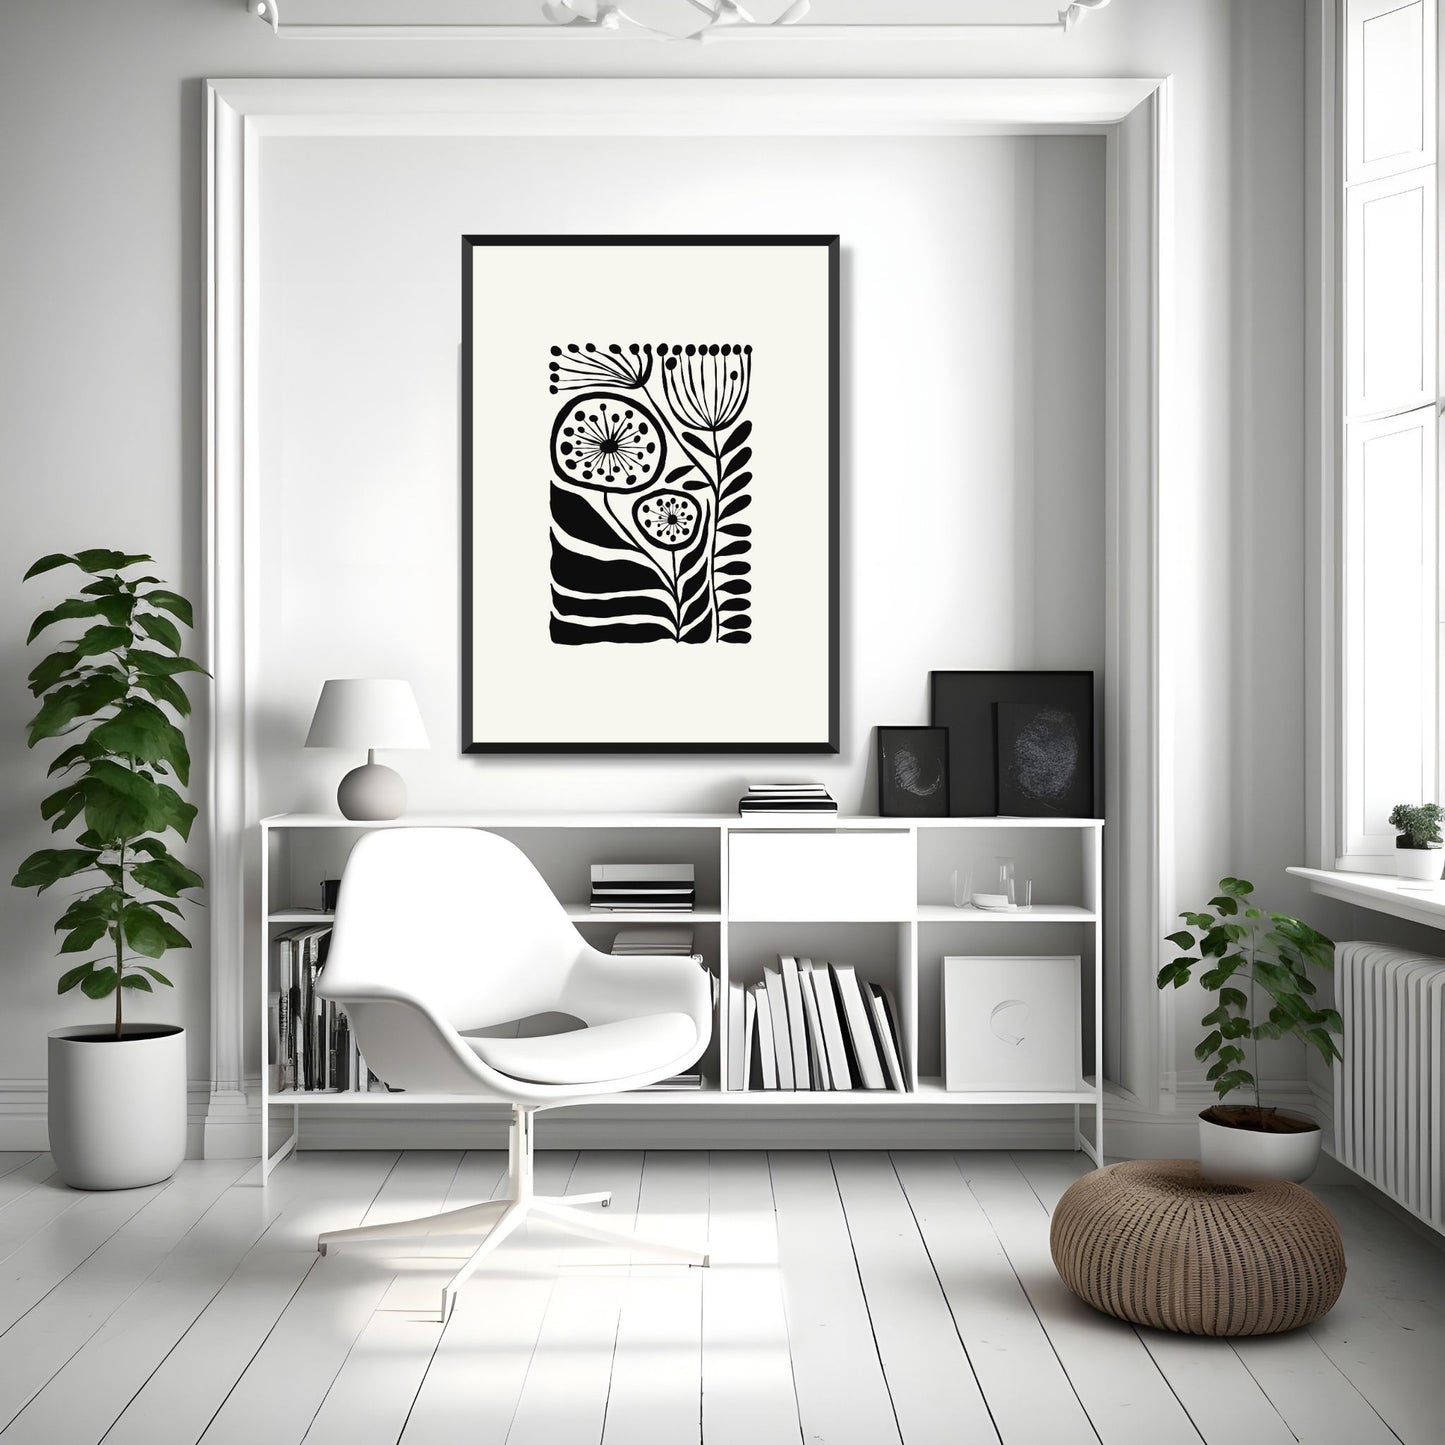 Bildet viser en grafisk plakat i abstrakt, floralt mønster i sort og dempet hvit bakgrunn. Plakaten har en bredt kant i dempet hvit farge rundt og henger i sort ramme på en lys vegg.